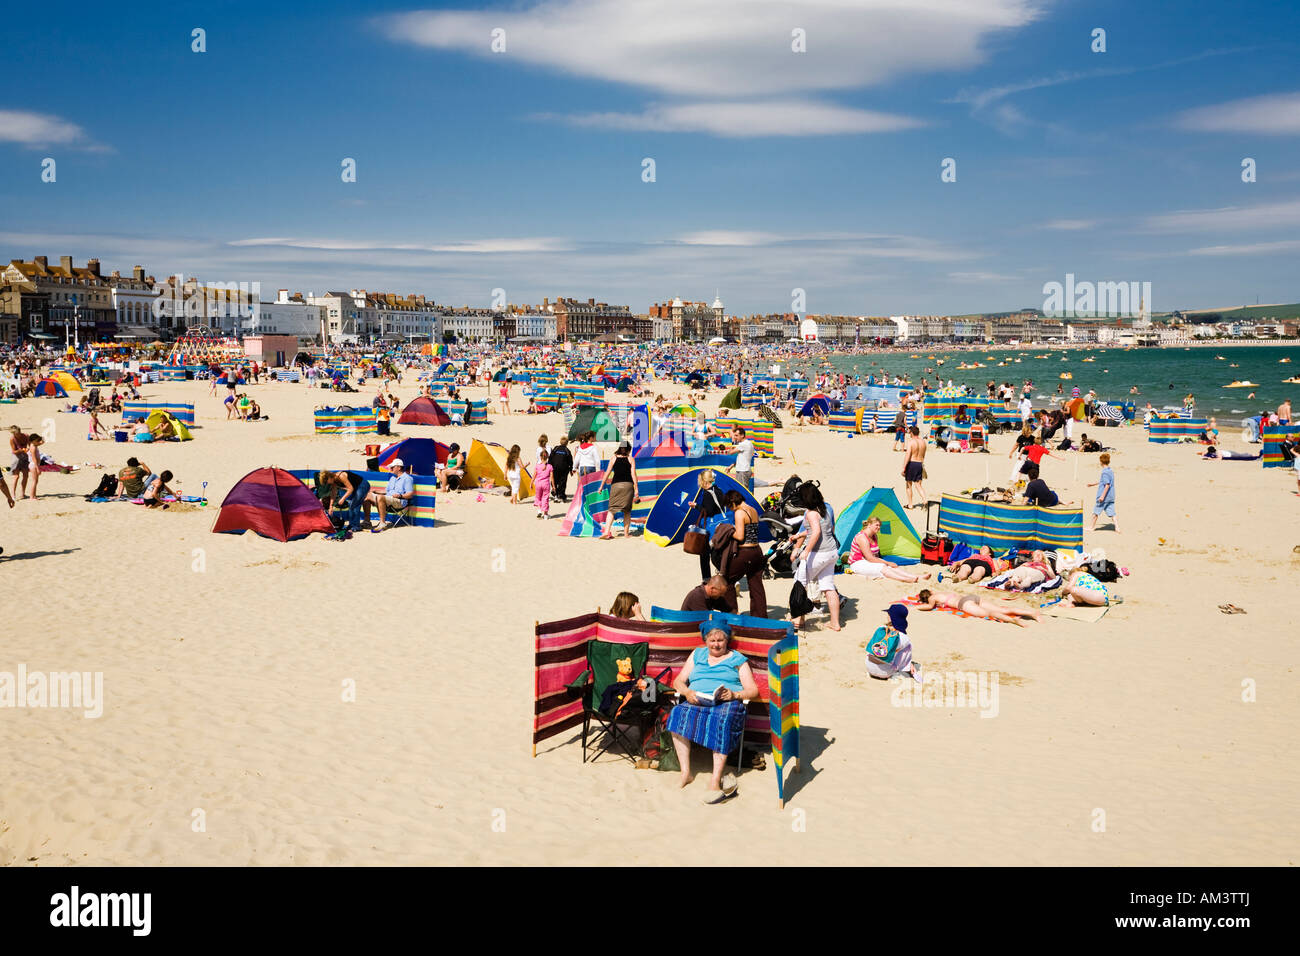 La gente sulla affollata occupato seaside beach in una calda giornata estiva, spiaggia di Weymouth Dorset, England, Regno Unito Foto Stock